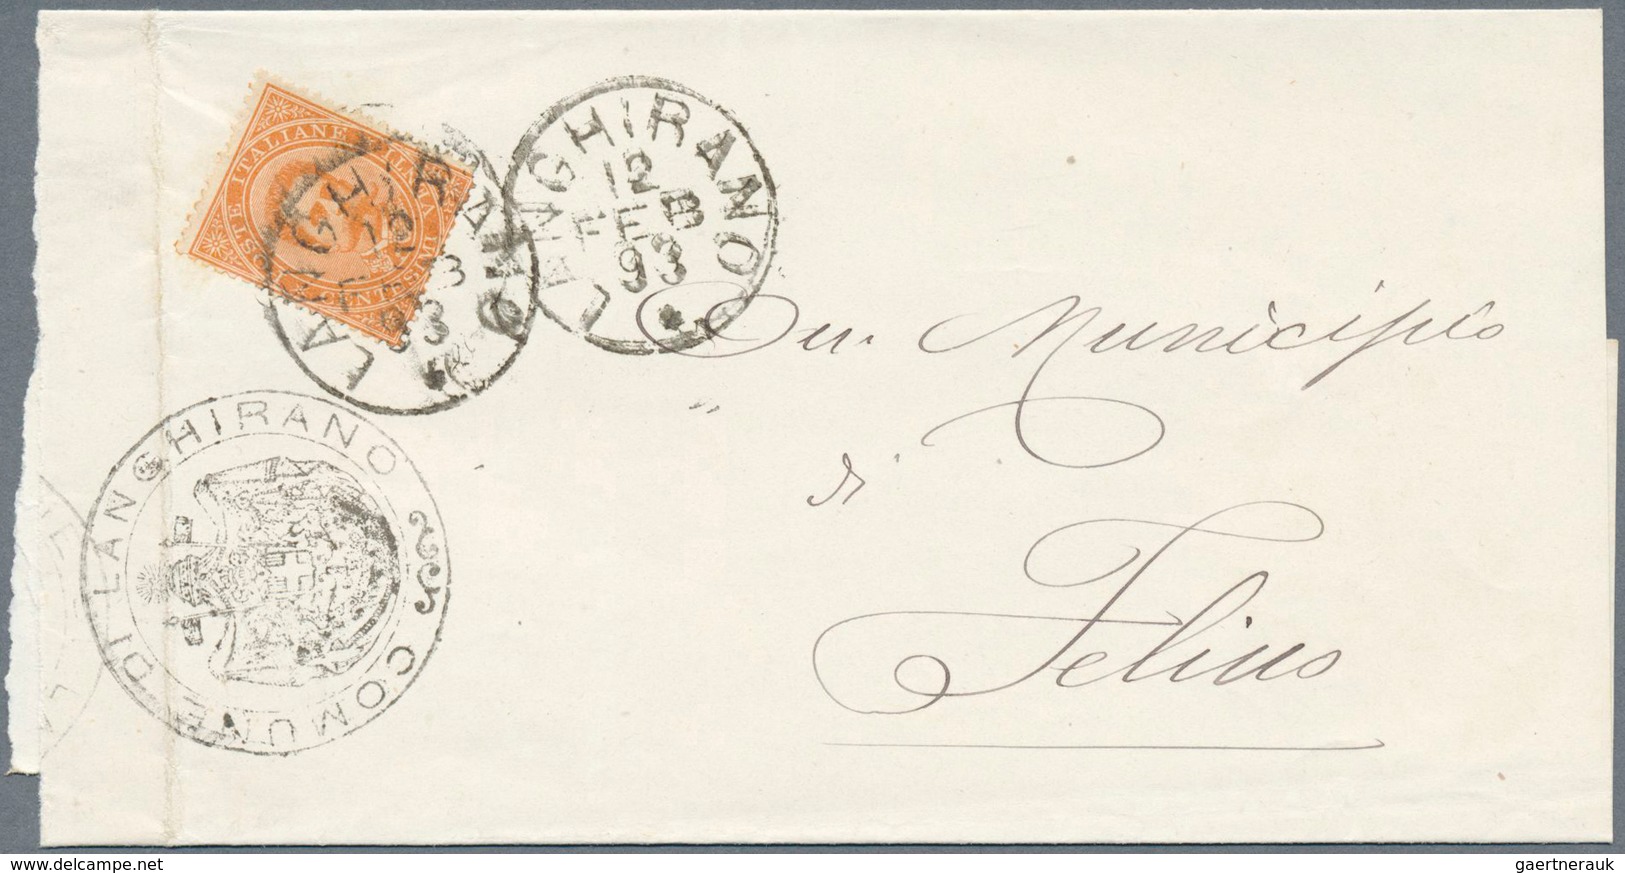 Italien: 1880/1895 (ca.), 7 Gemeindebriefe mit verschiedenen Frankaturen, Stempeln und Adressaten, a